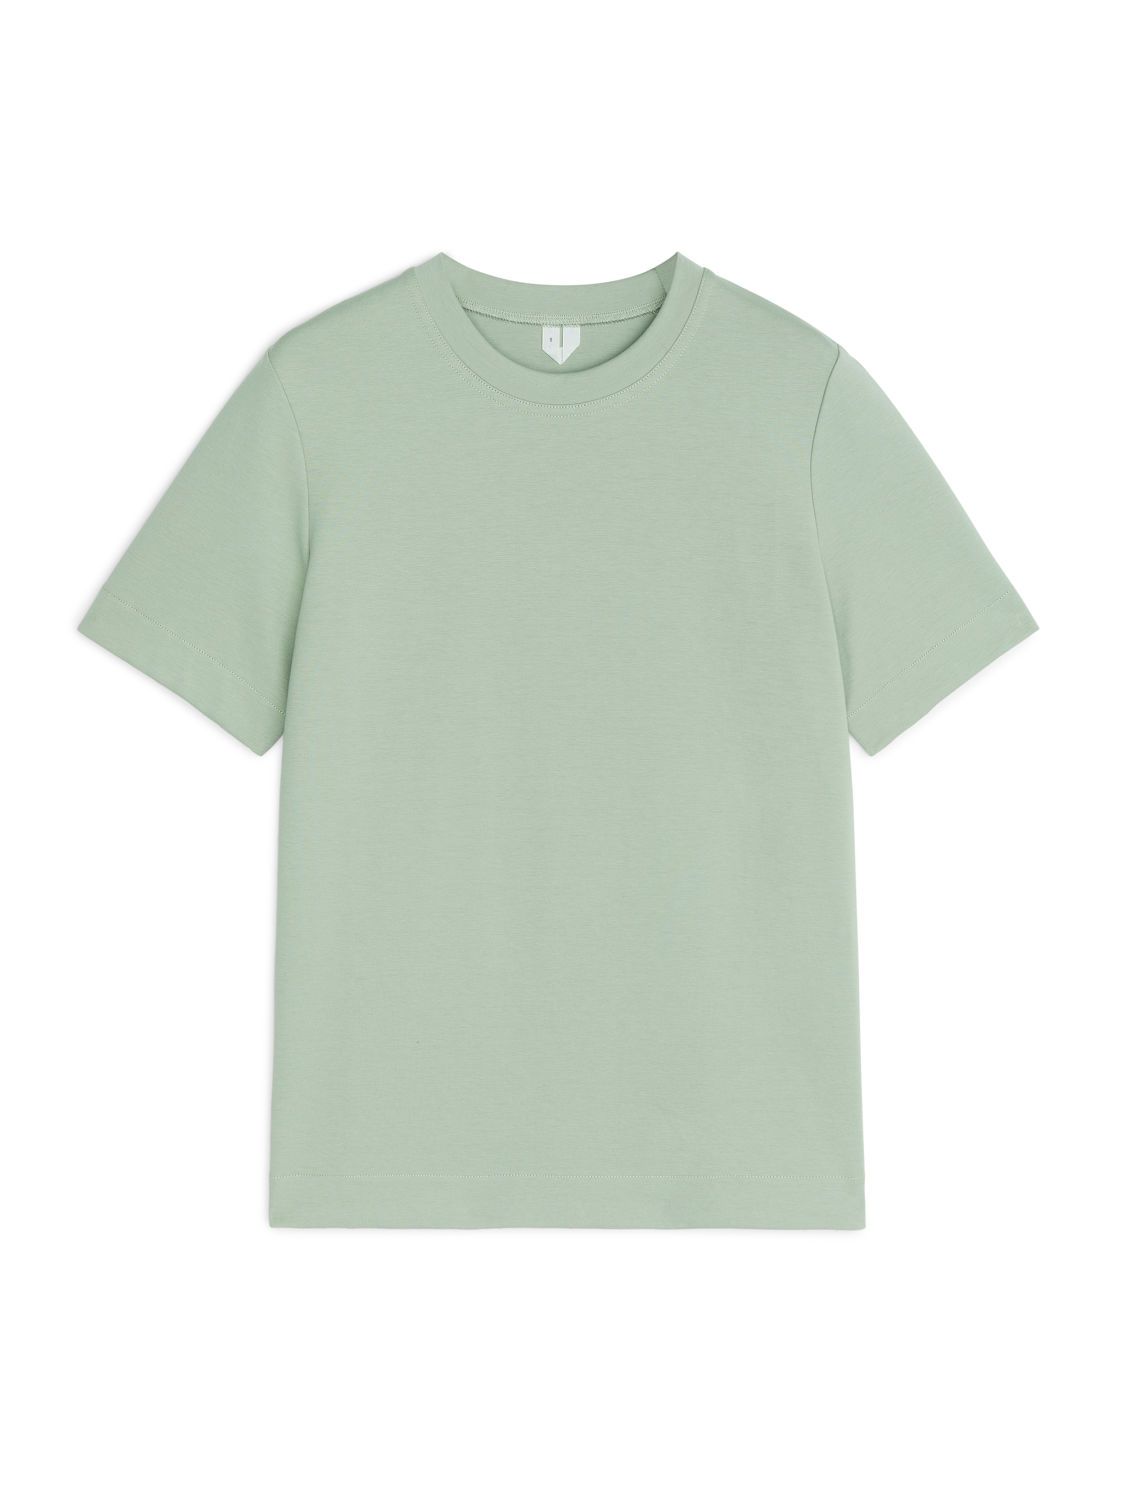 Heavy-Weight T-Shirt - Pale Green - Tops - ARKET DE | ARKET (US&UK)